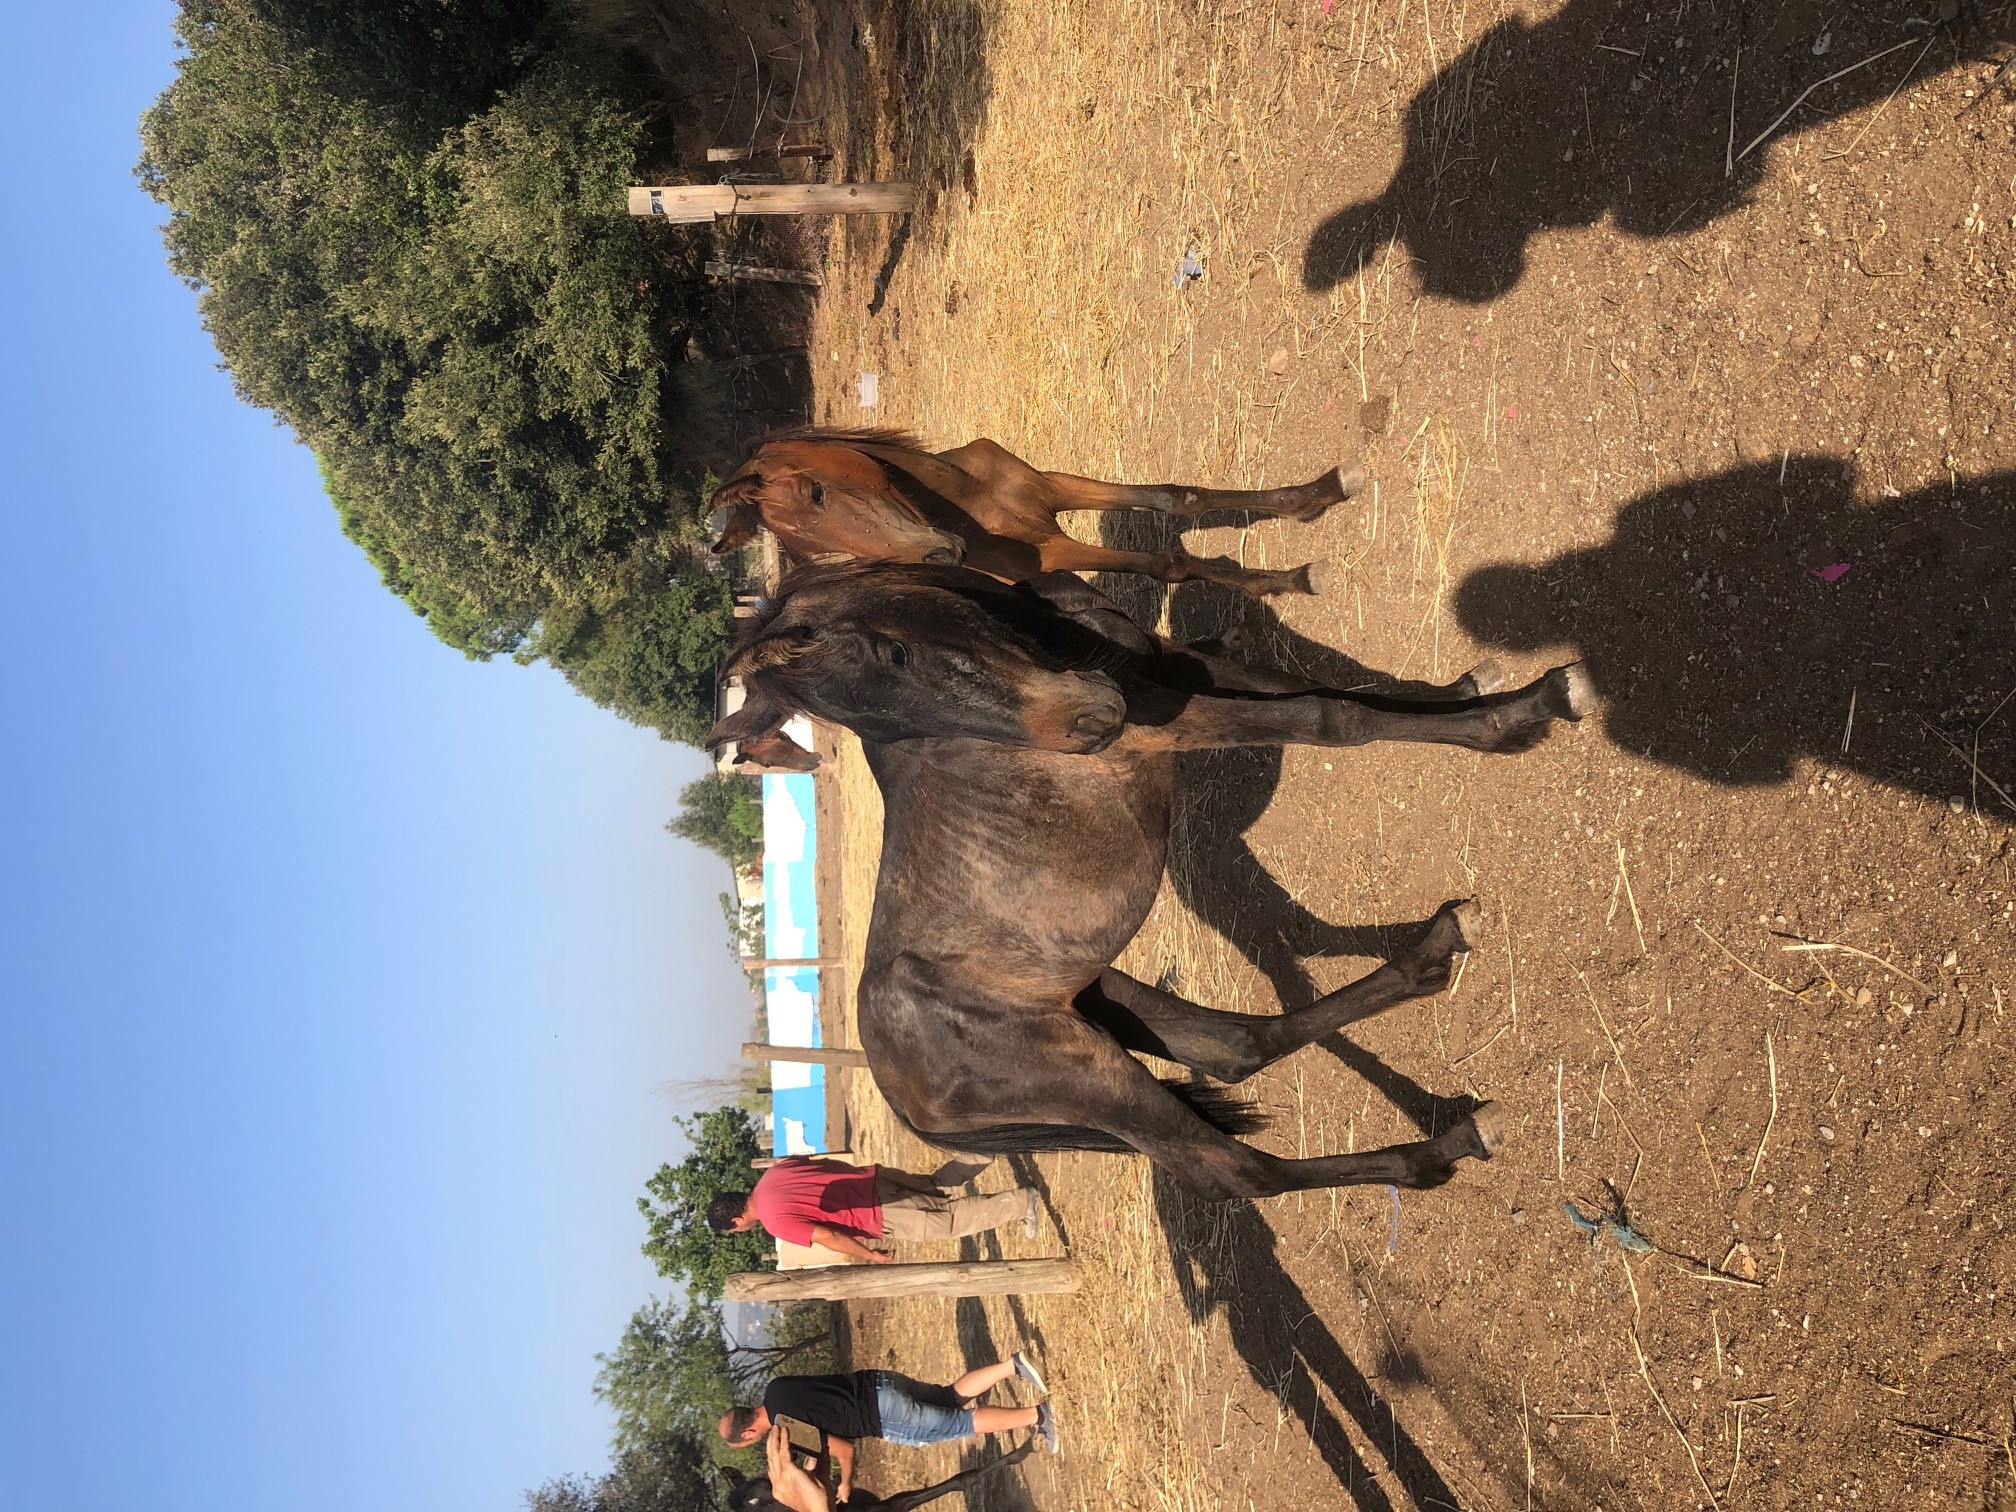 Cavalls confiscats avui a una finca de Vilanova del Vallès